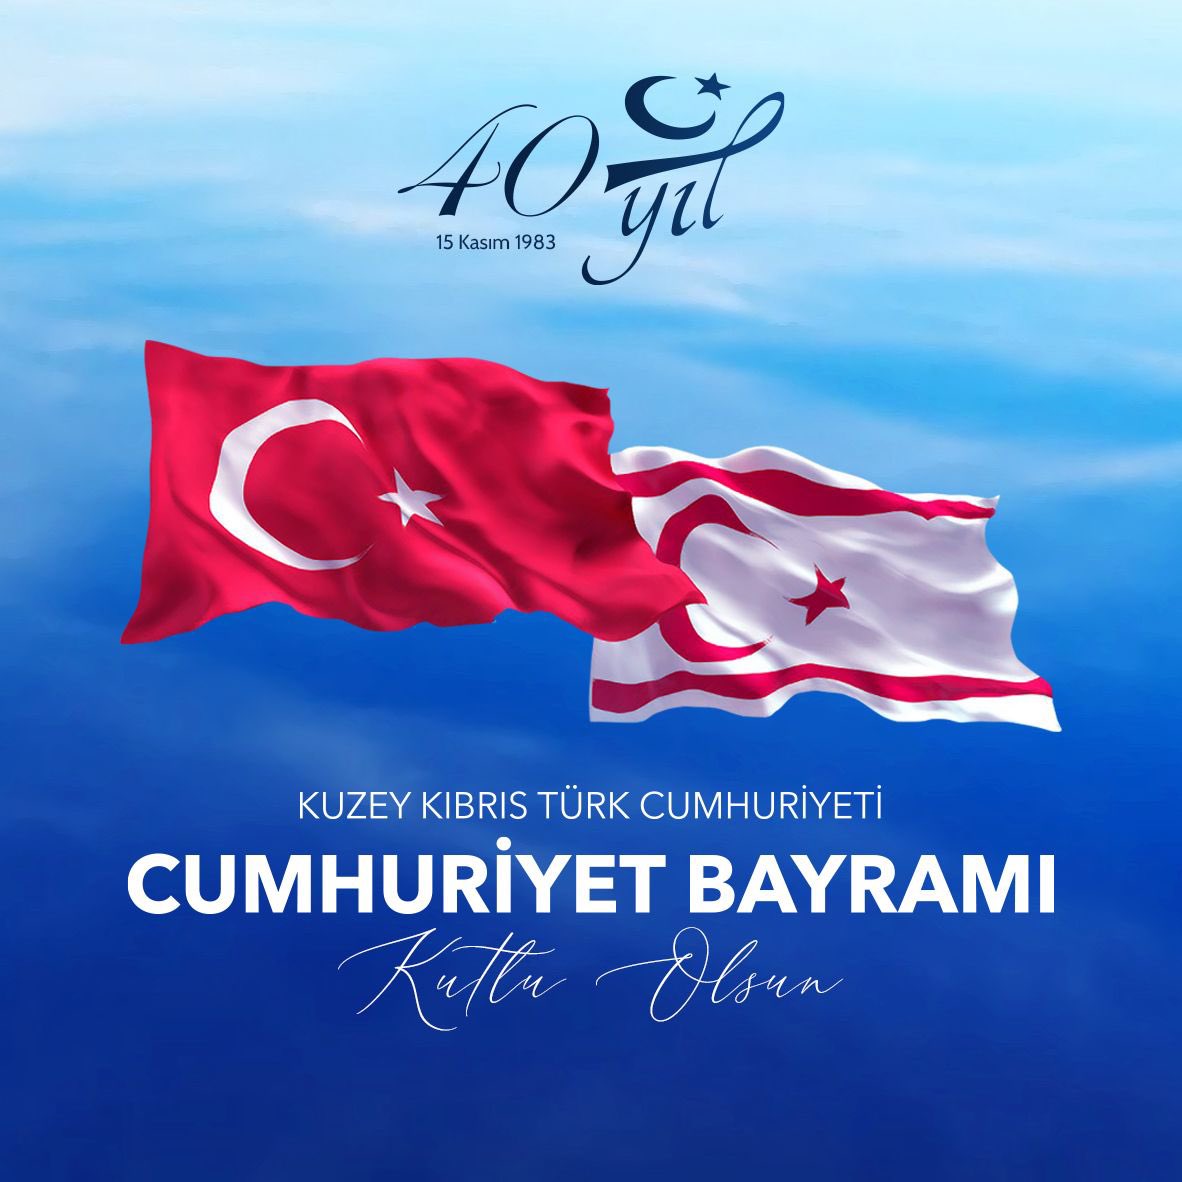 Kuzey Kıbrıs Türk Cumhuriyeti’nin kuruluşunun 40. yılı kutlu olsun…